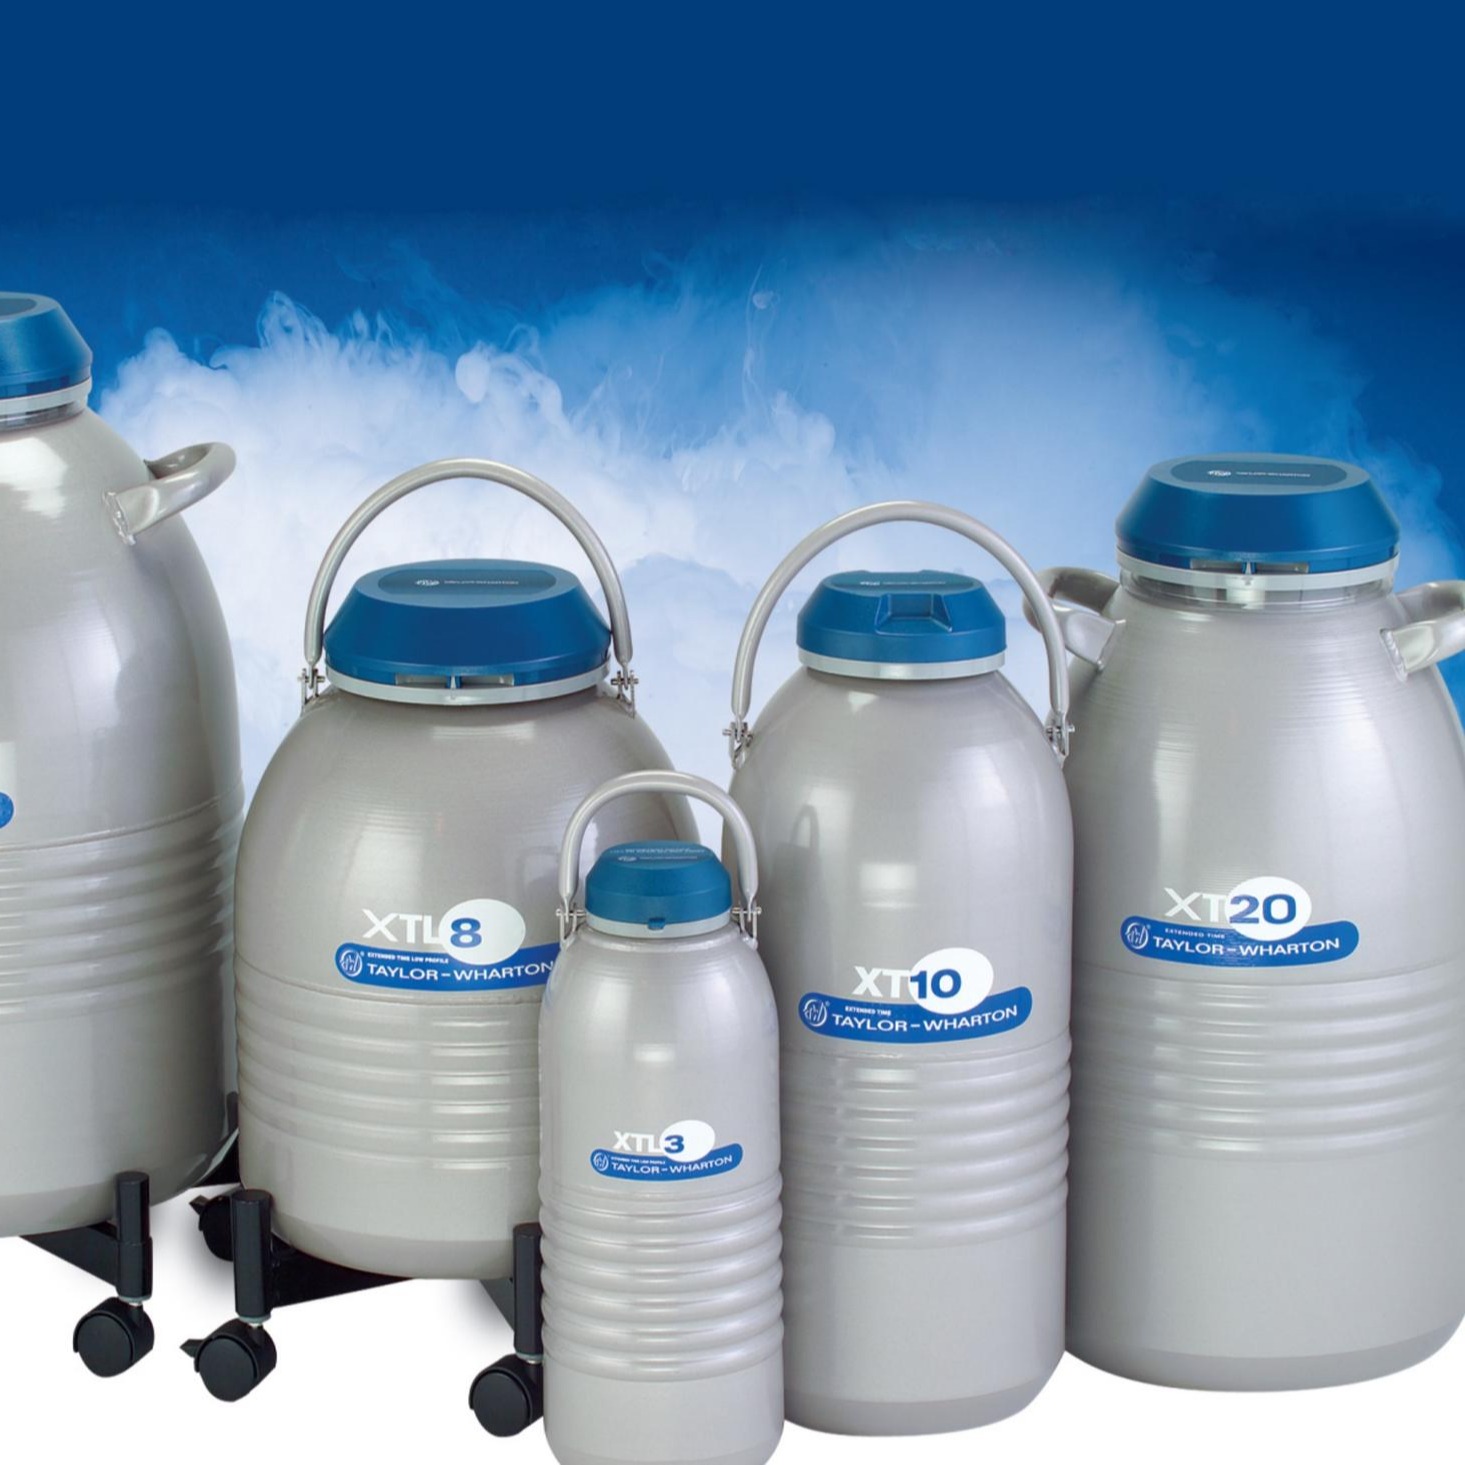 泰来华顿Worthington XT20便携式液氮罐,液氮容器,生物容器 进口